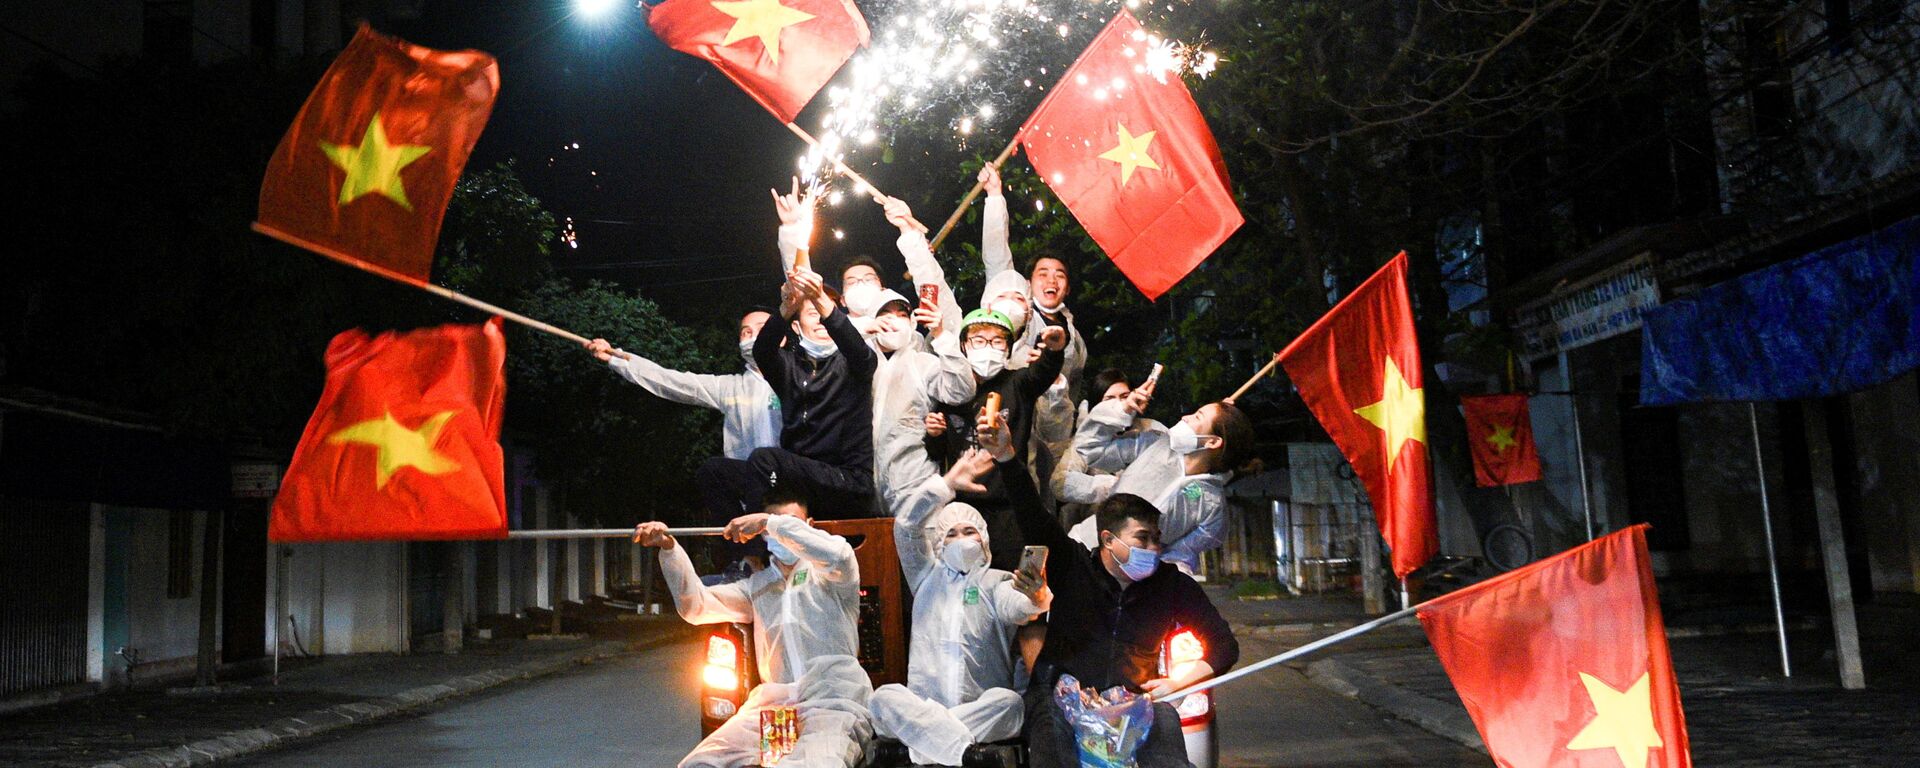 Người dân ăn mừng kết thúc giãn cách xã hội ở Chí Linh, tỉnh Hải Dương, Việt Nam - Sputnik Việt Nam, 1920, 24.04.2021